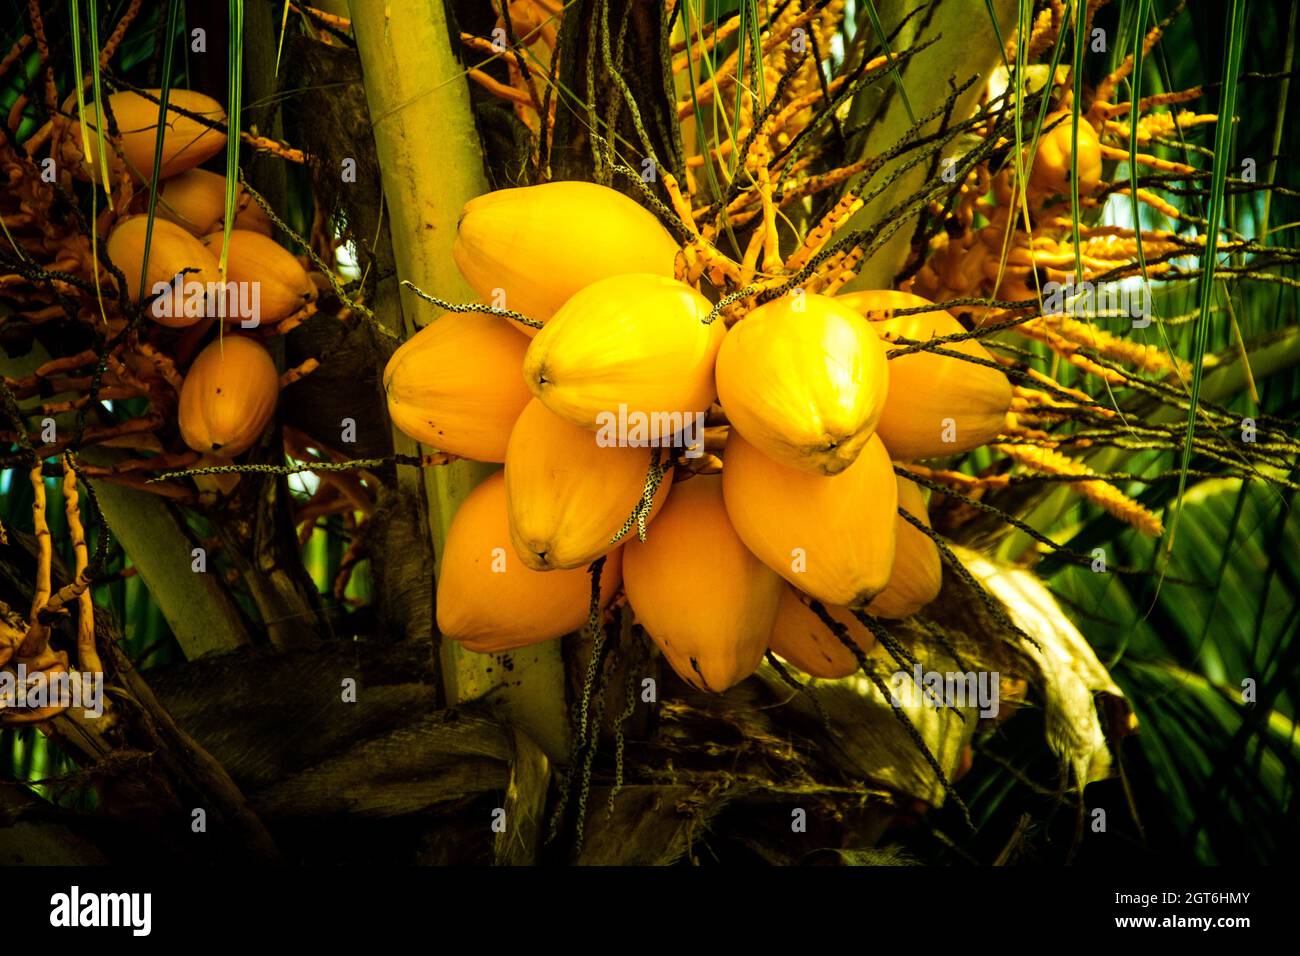 Close-up Of Fruits Hanging On Kokosnüsse Stock Photo